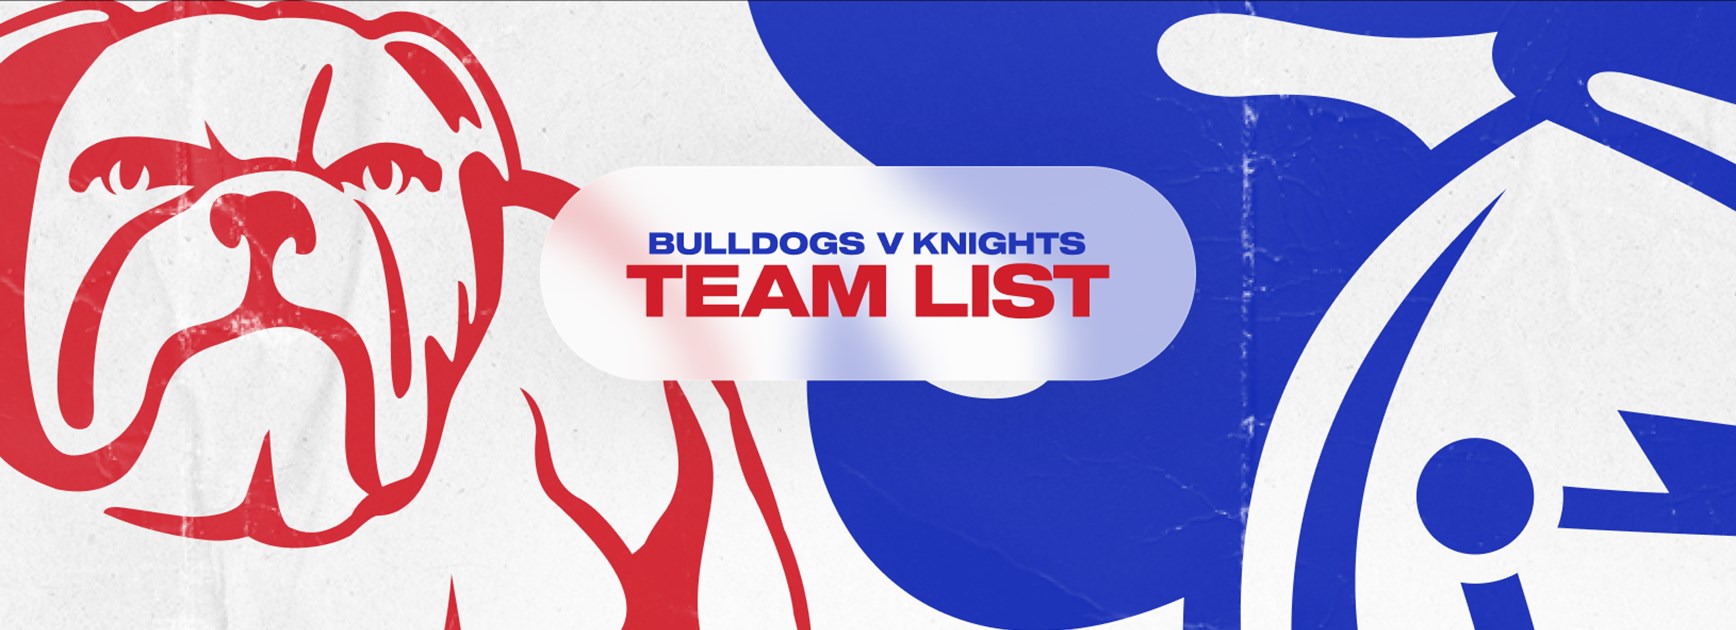 Bulldogs v Knights Round 7 NRL team list